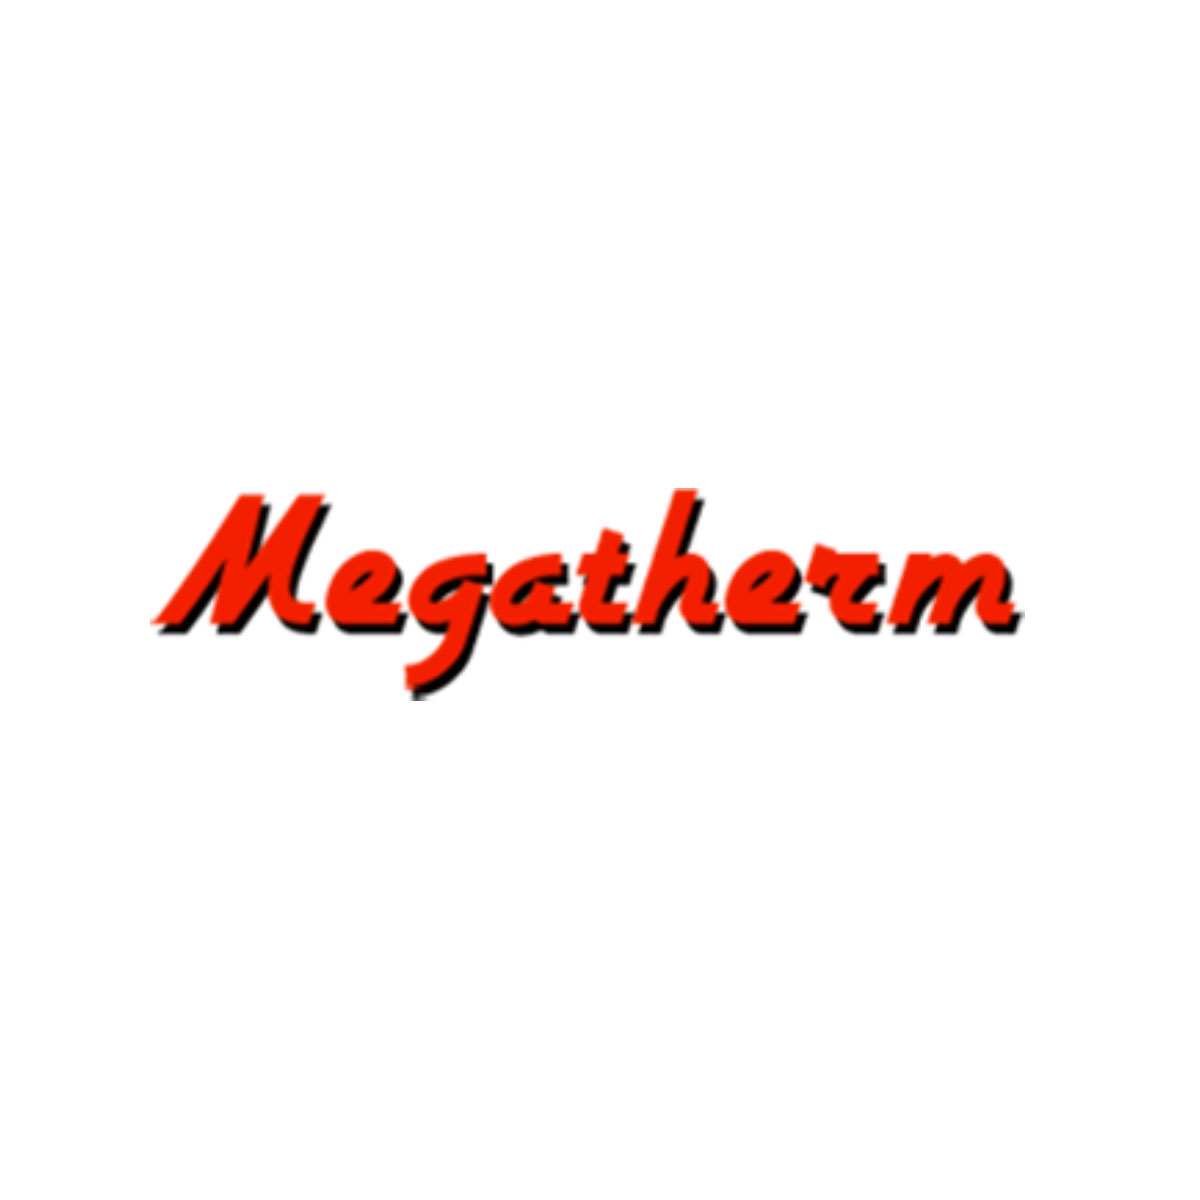 Megatherm Logo, Ecothermo